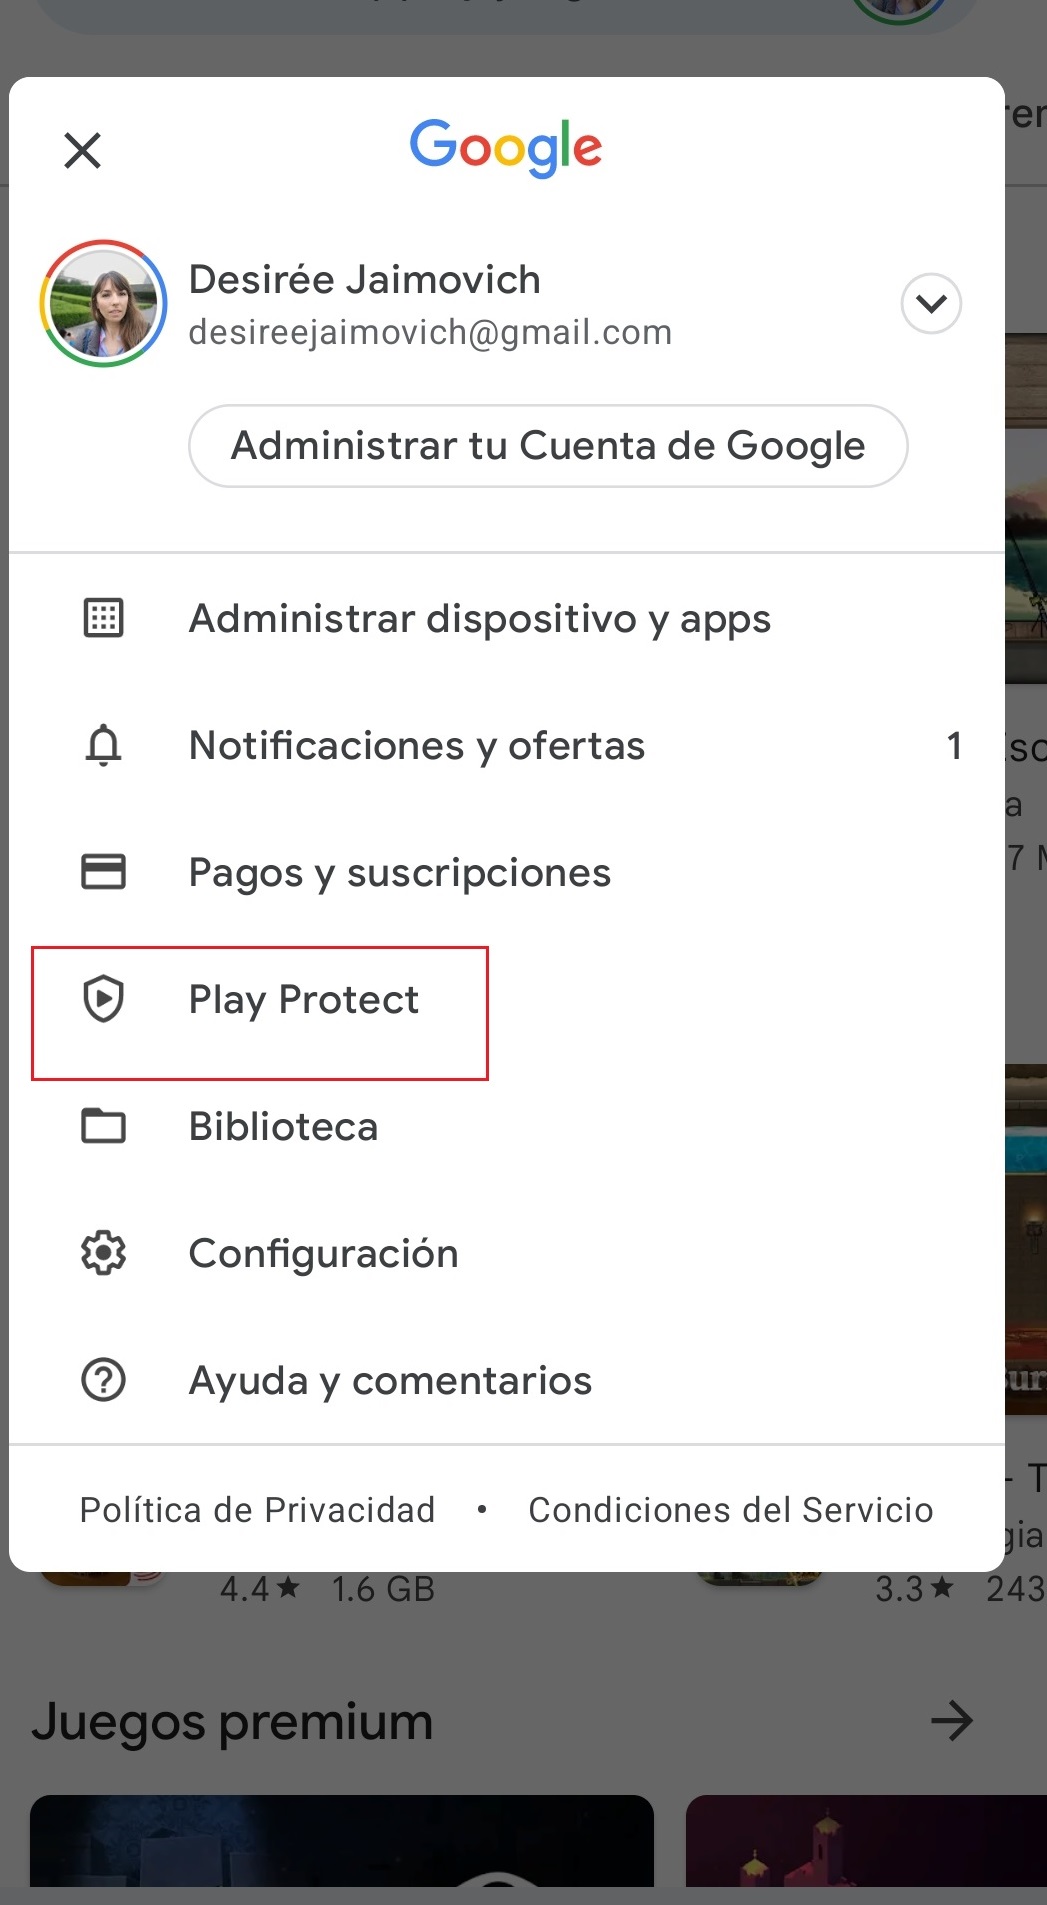 Ingresar en Play Store, presionar en el ícono de perfil y después entrar en Play Protect